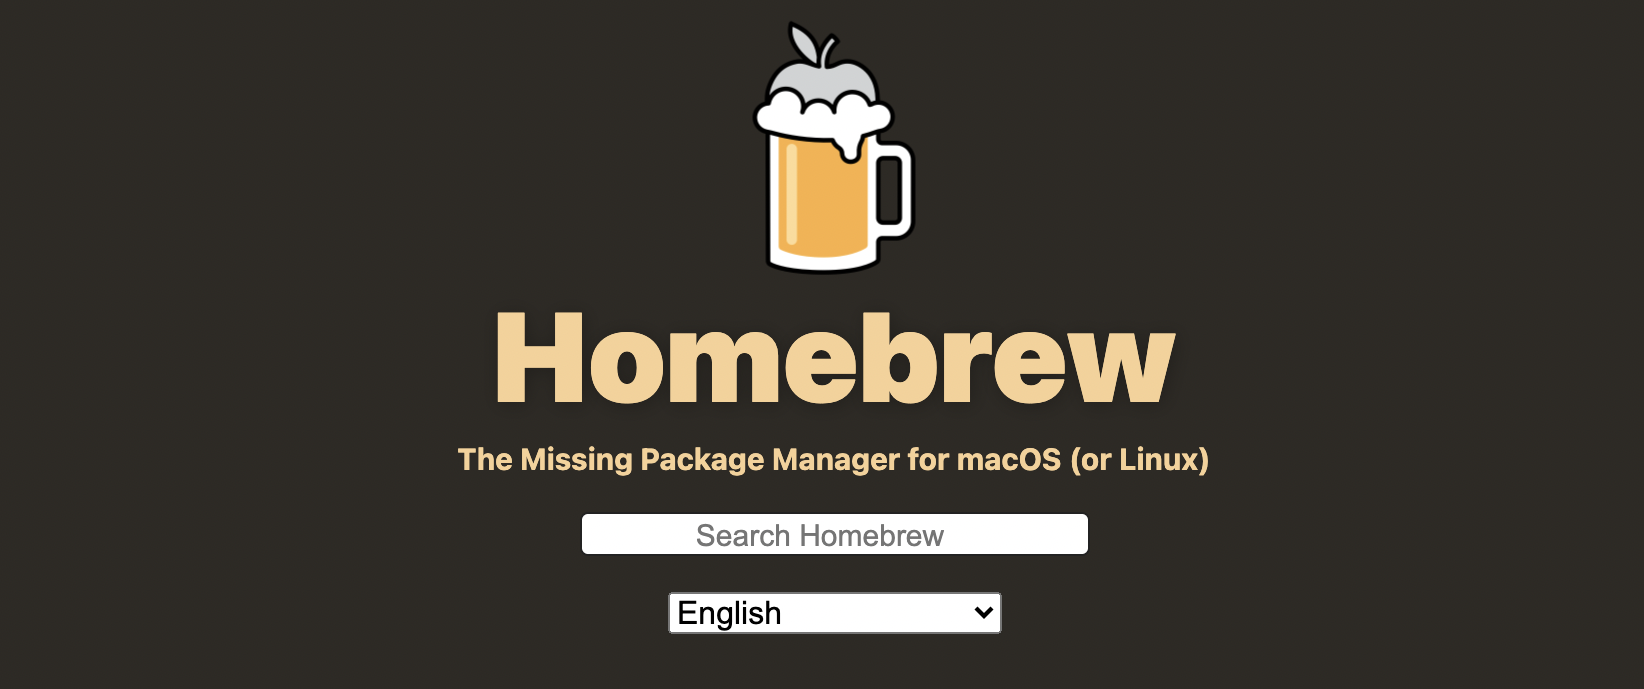 ติดตั้ง Software หลายๆตัวบน mac ในครั้งดียว ด้วย Brew